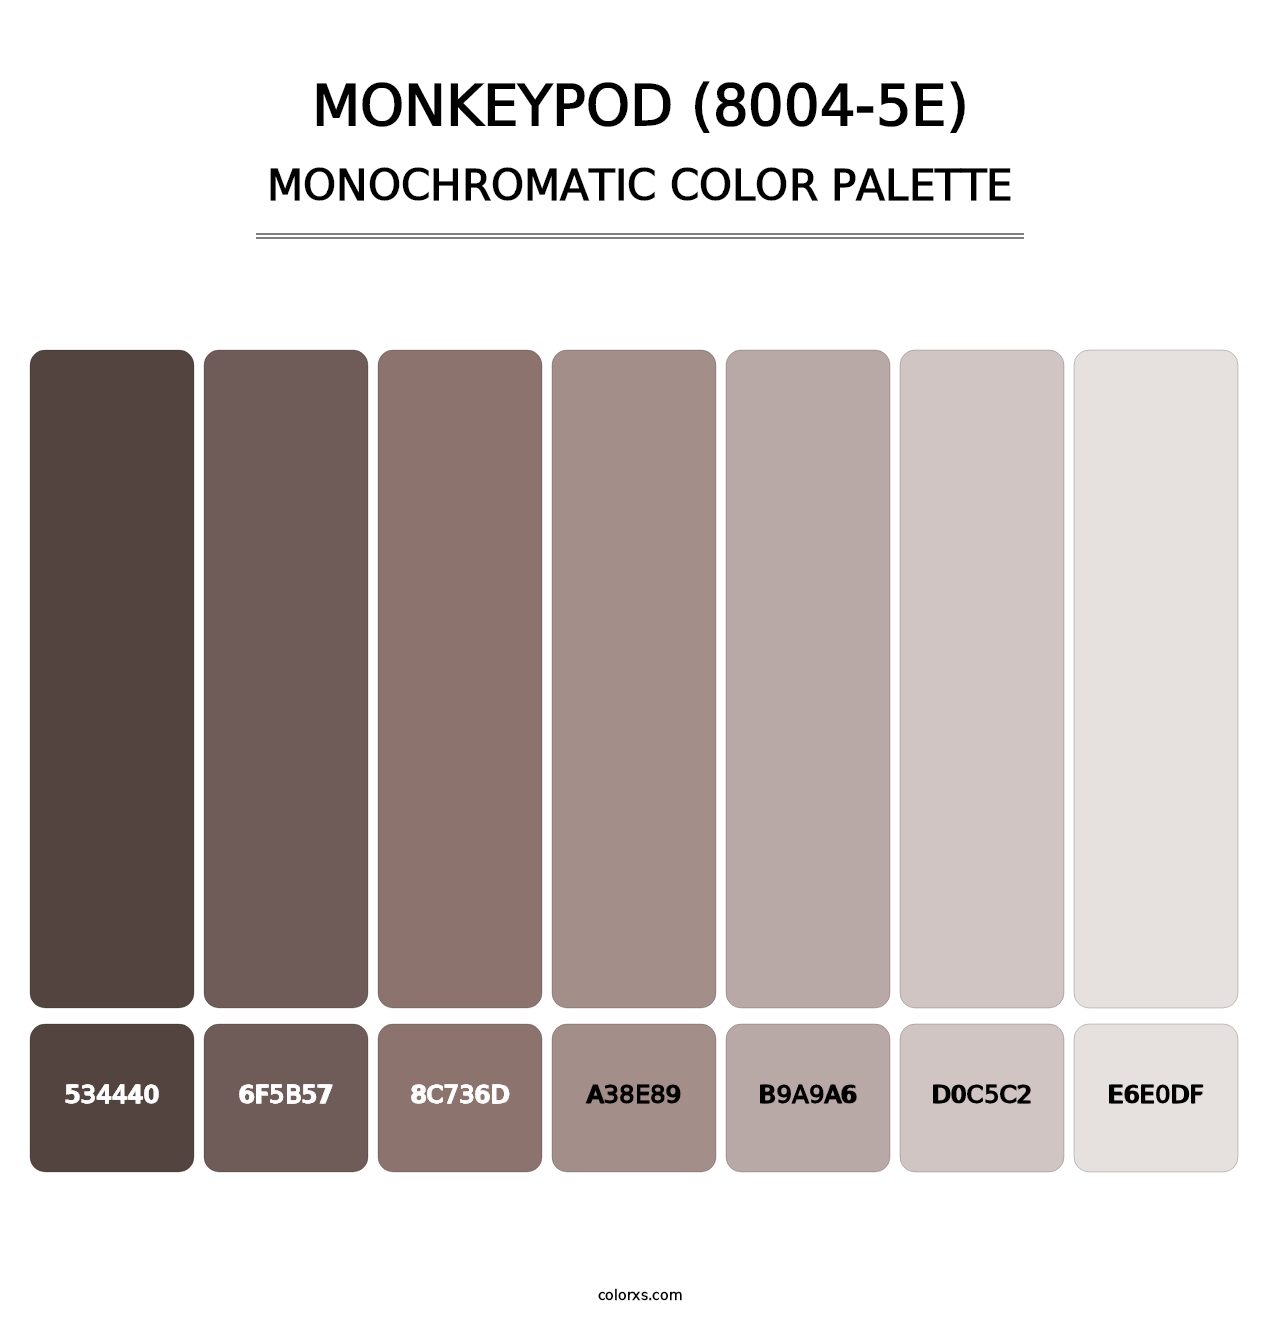 Monkeypod (8004-5E) - Monochromatic Color Palette